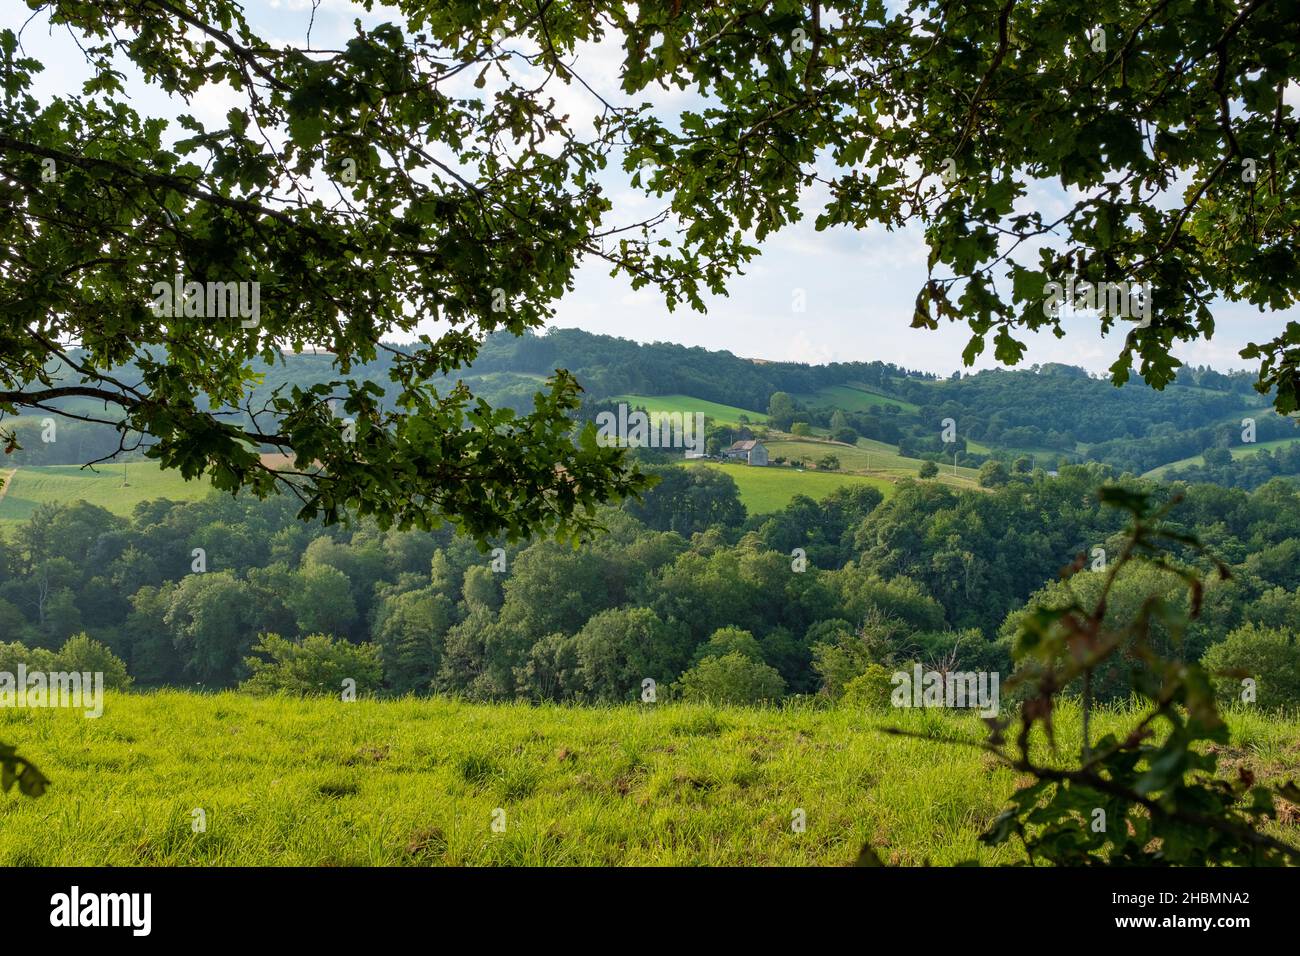 Ein typischer Blick auf die Landschaft im Südwesten Frankreichs auf dem Jakobsweg, aufgenommen an einem sonnigen Sommermorgen, ohne Menschen Stockfoto